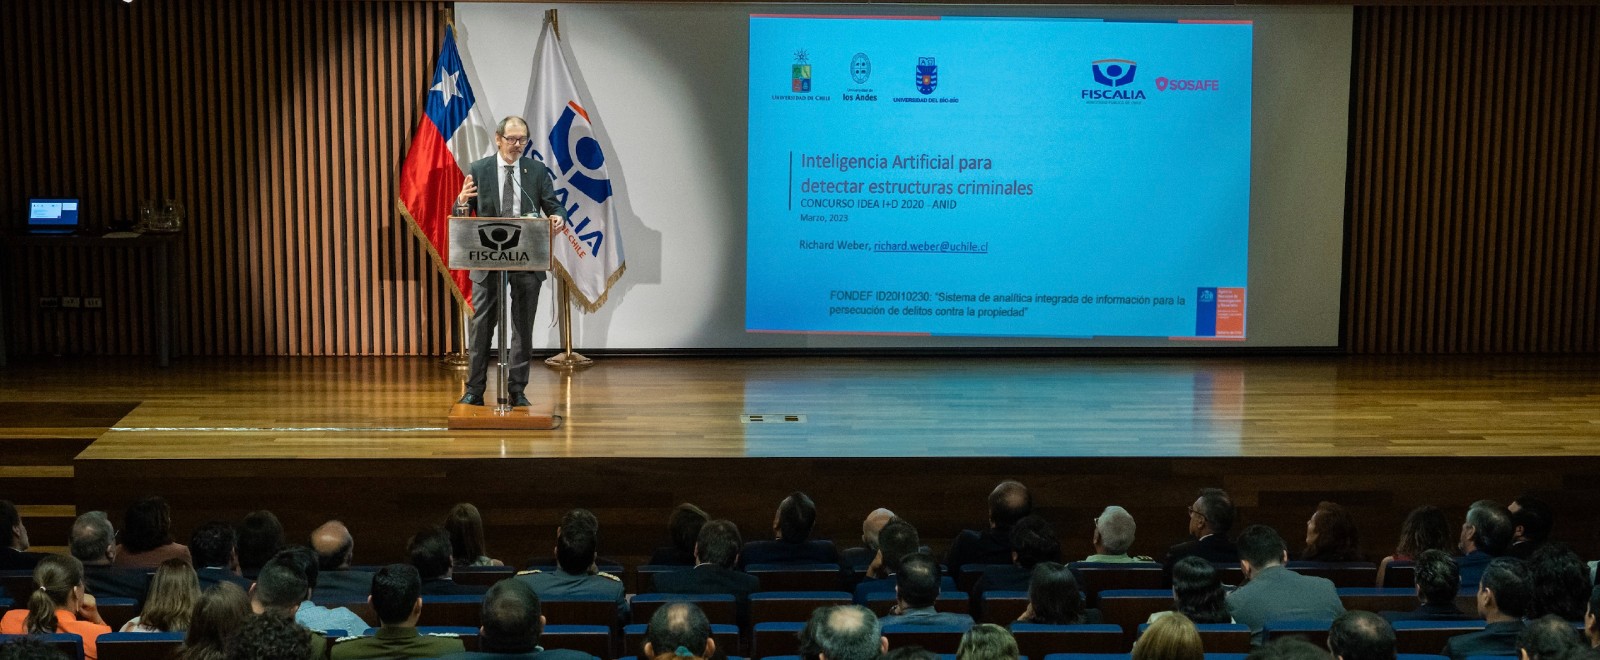 Sistema basado en IA será aplicado por Fiscalía de Chile para detectar estructuras criminales